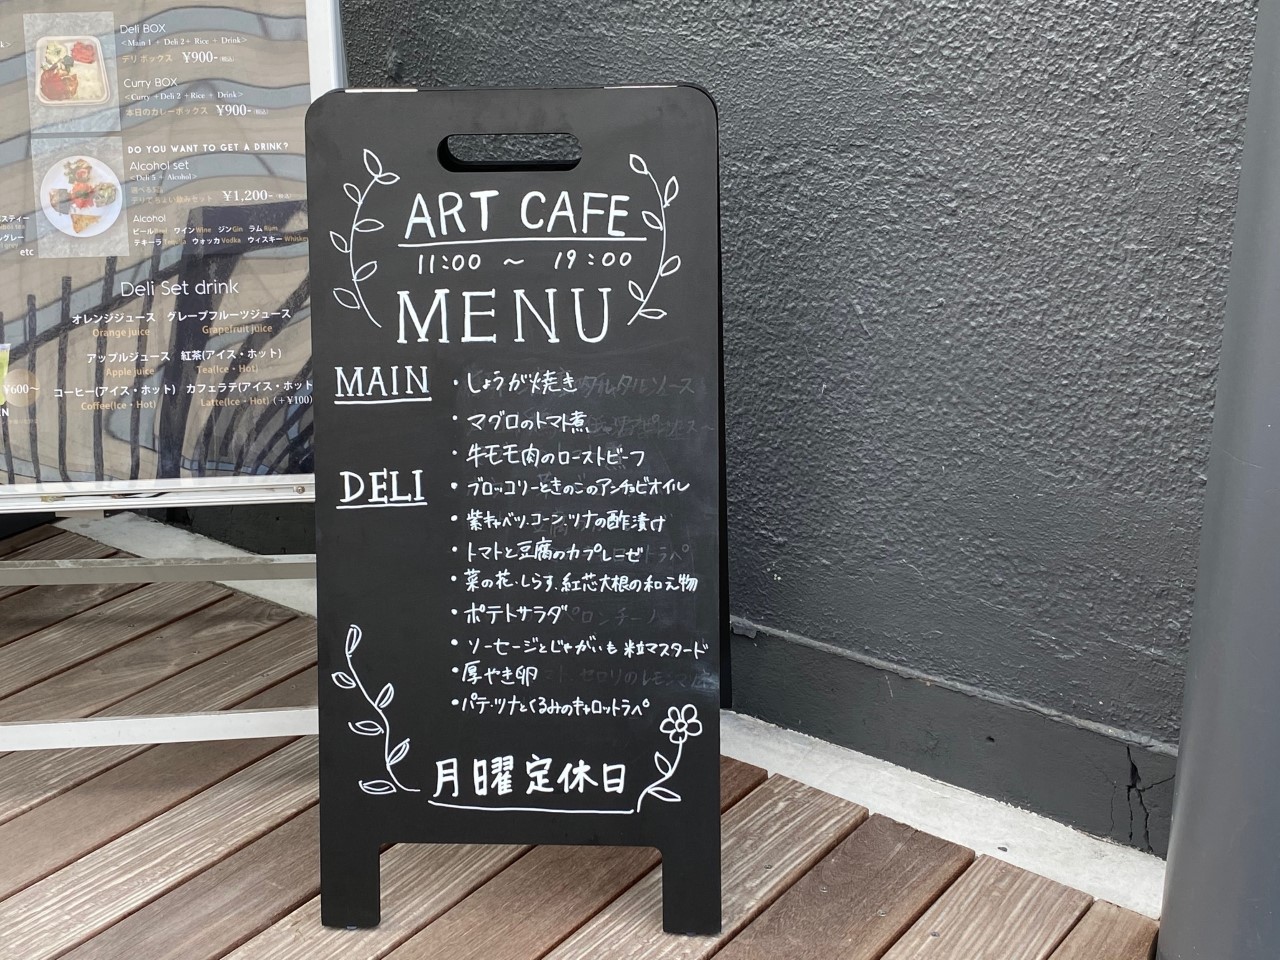 「ミヤビ品川工場売店」跡地にオープンした「ART CAFE」